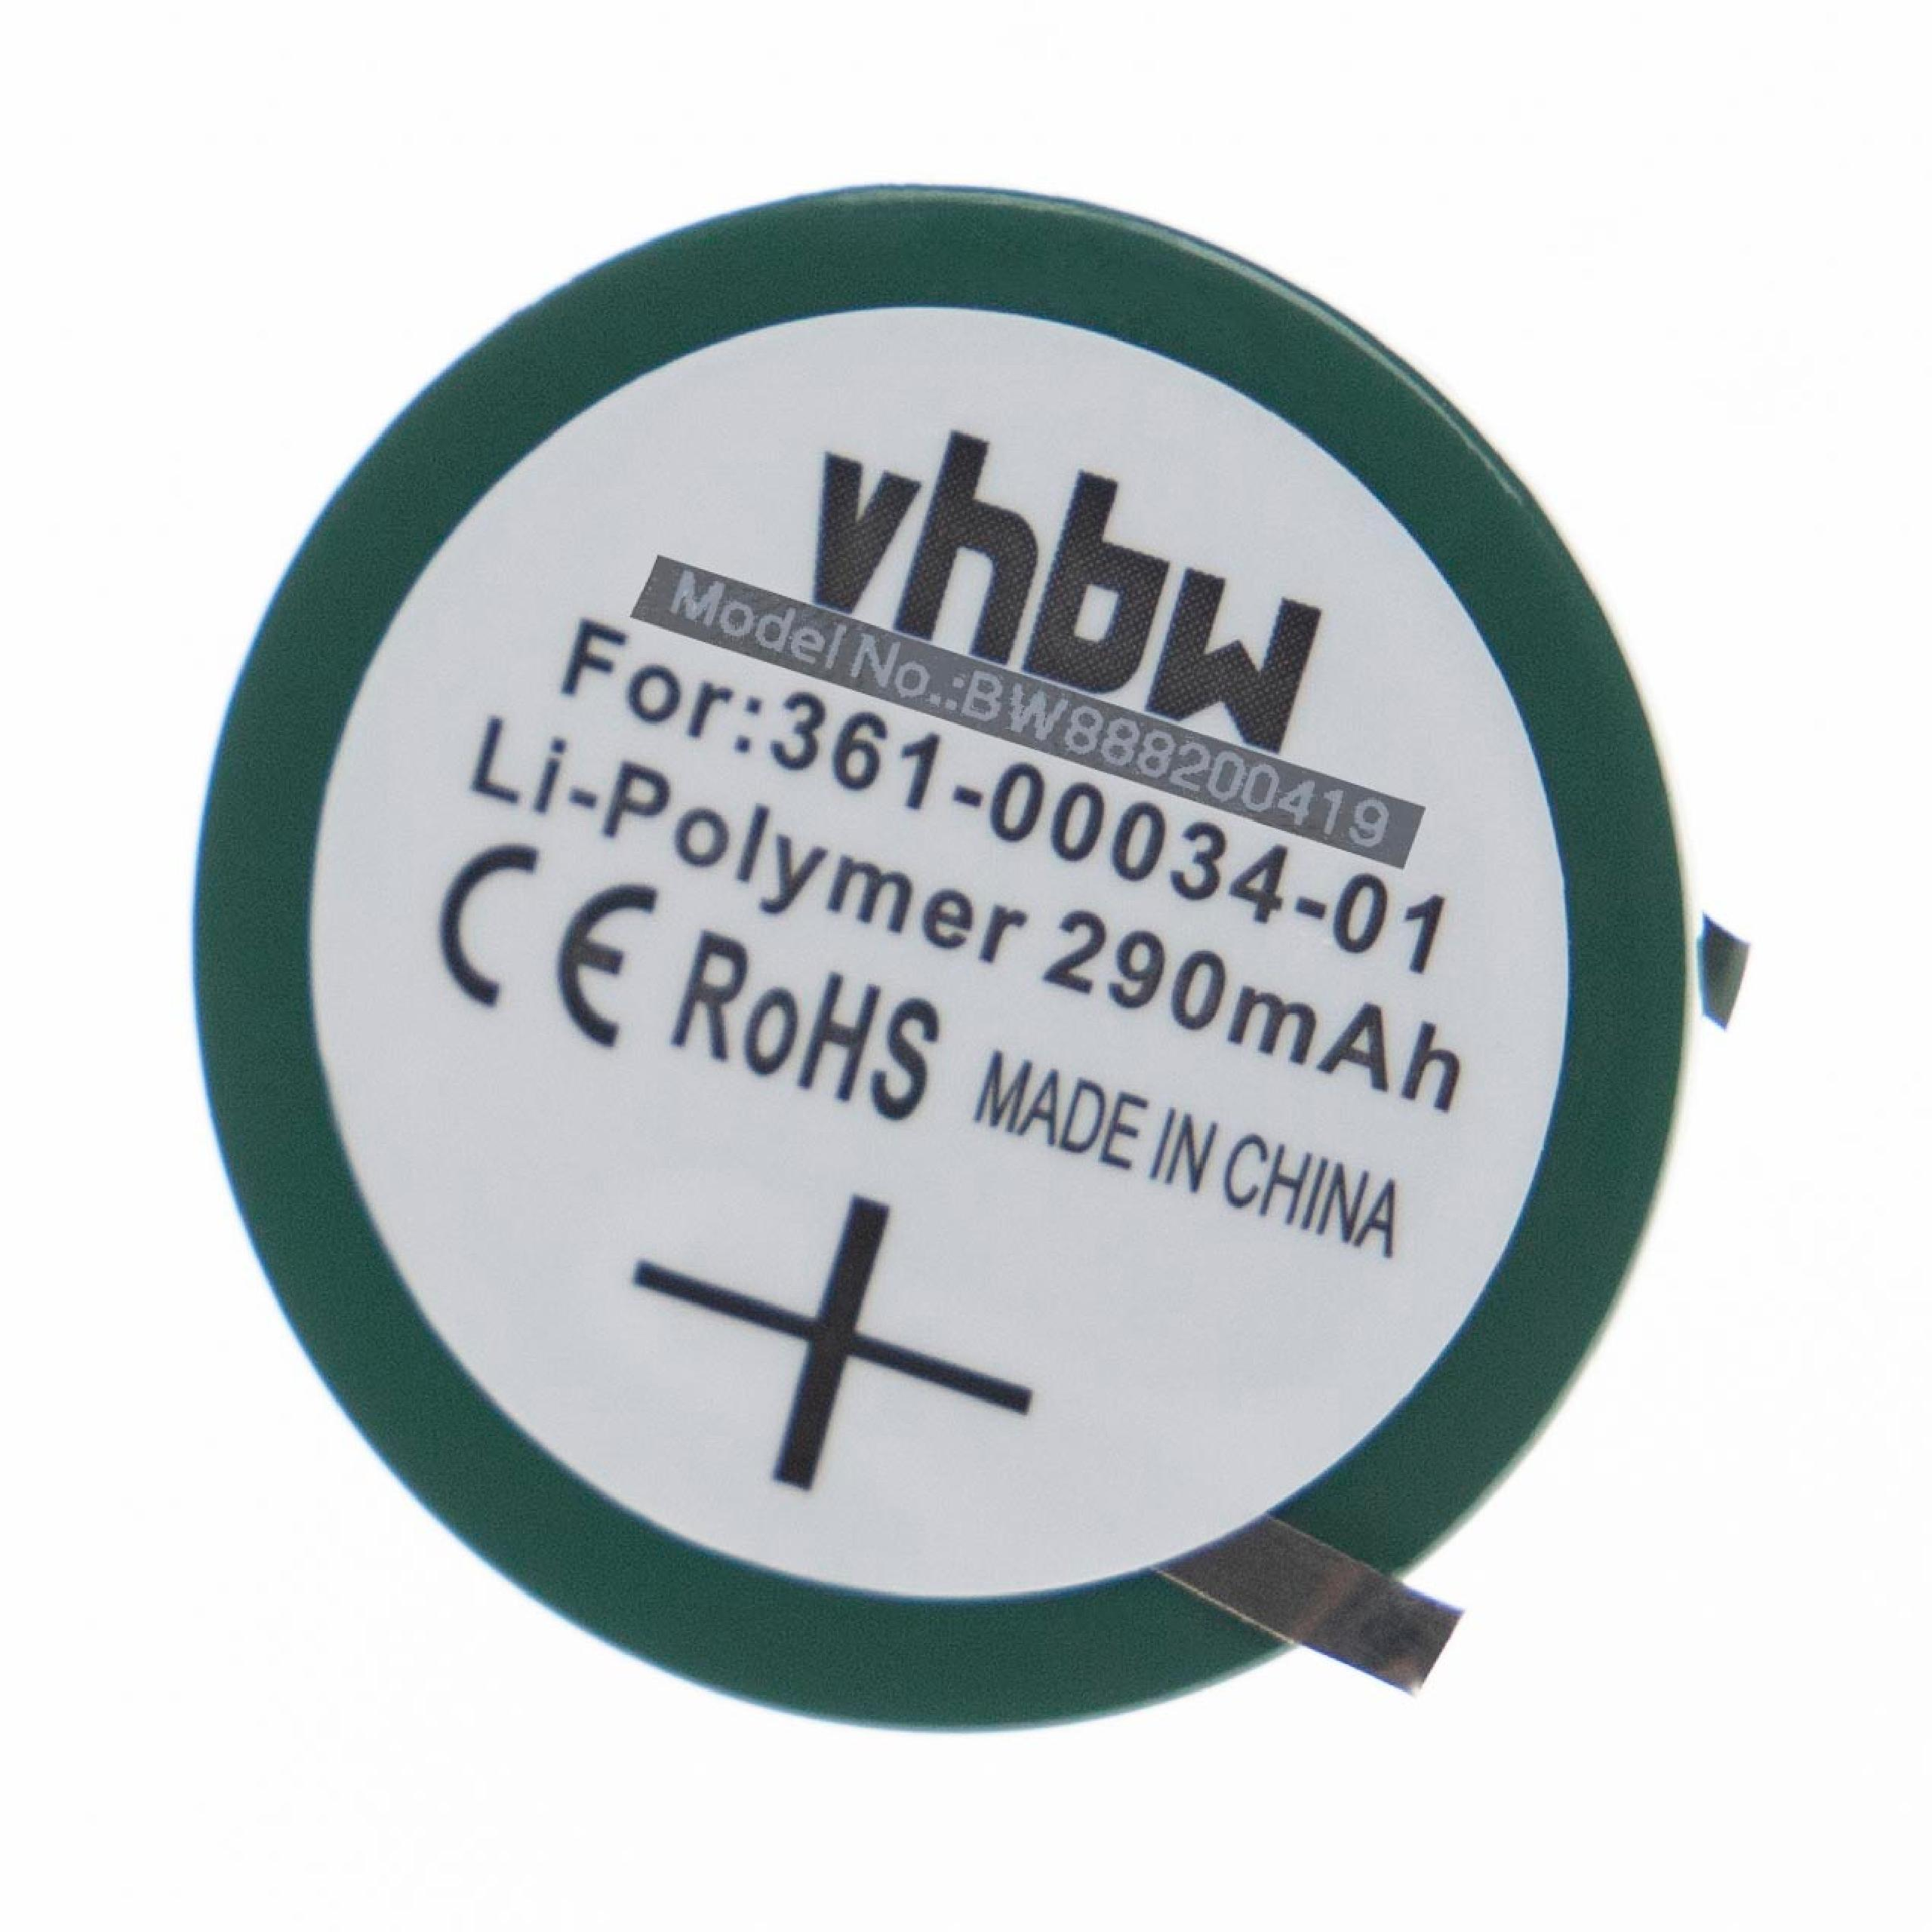 Ersatz Akku - 290 für Li-Polymer für Garmin Volt, 3.7 PD3048 Smartwatch, VHBW 361-00034-00,